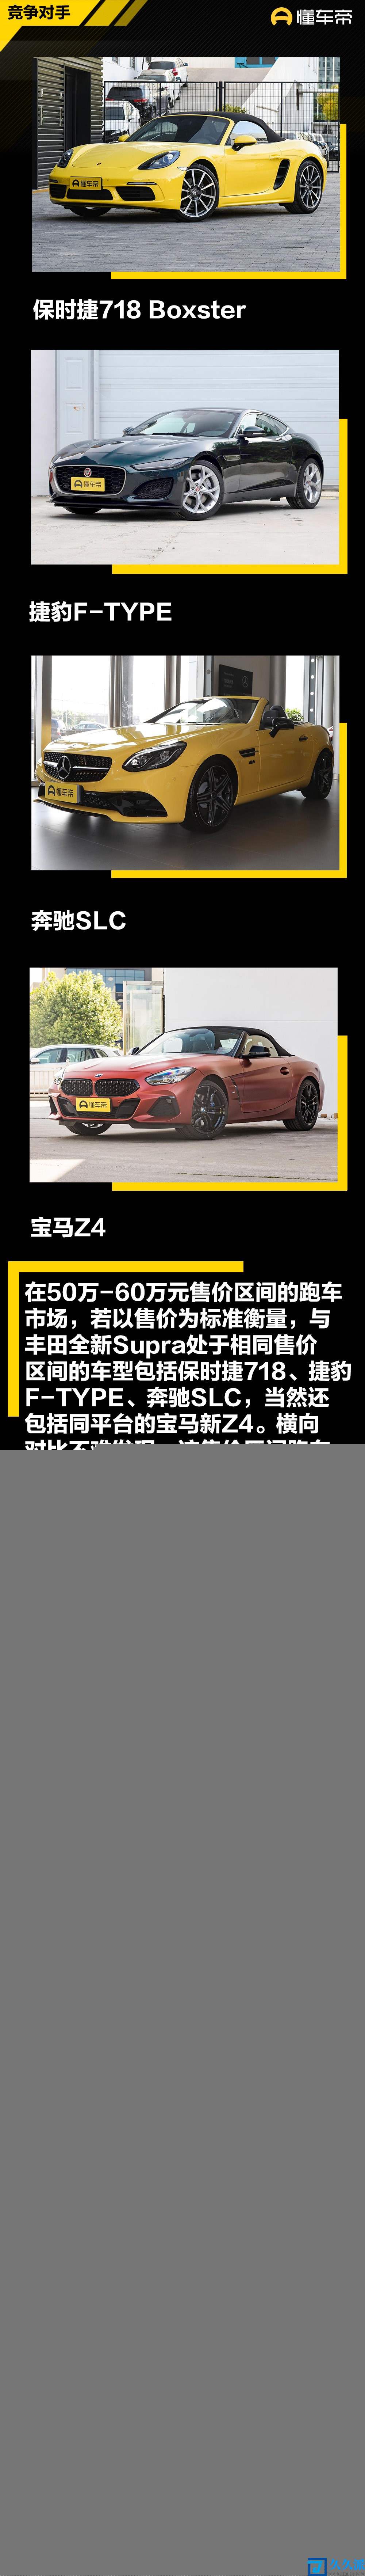 采用大量碳纤维部件全新丰田Supra特别版官图发布